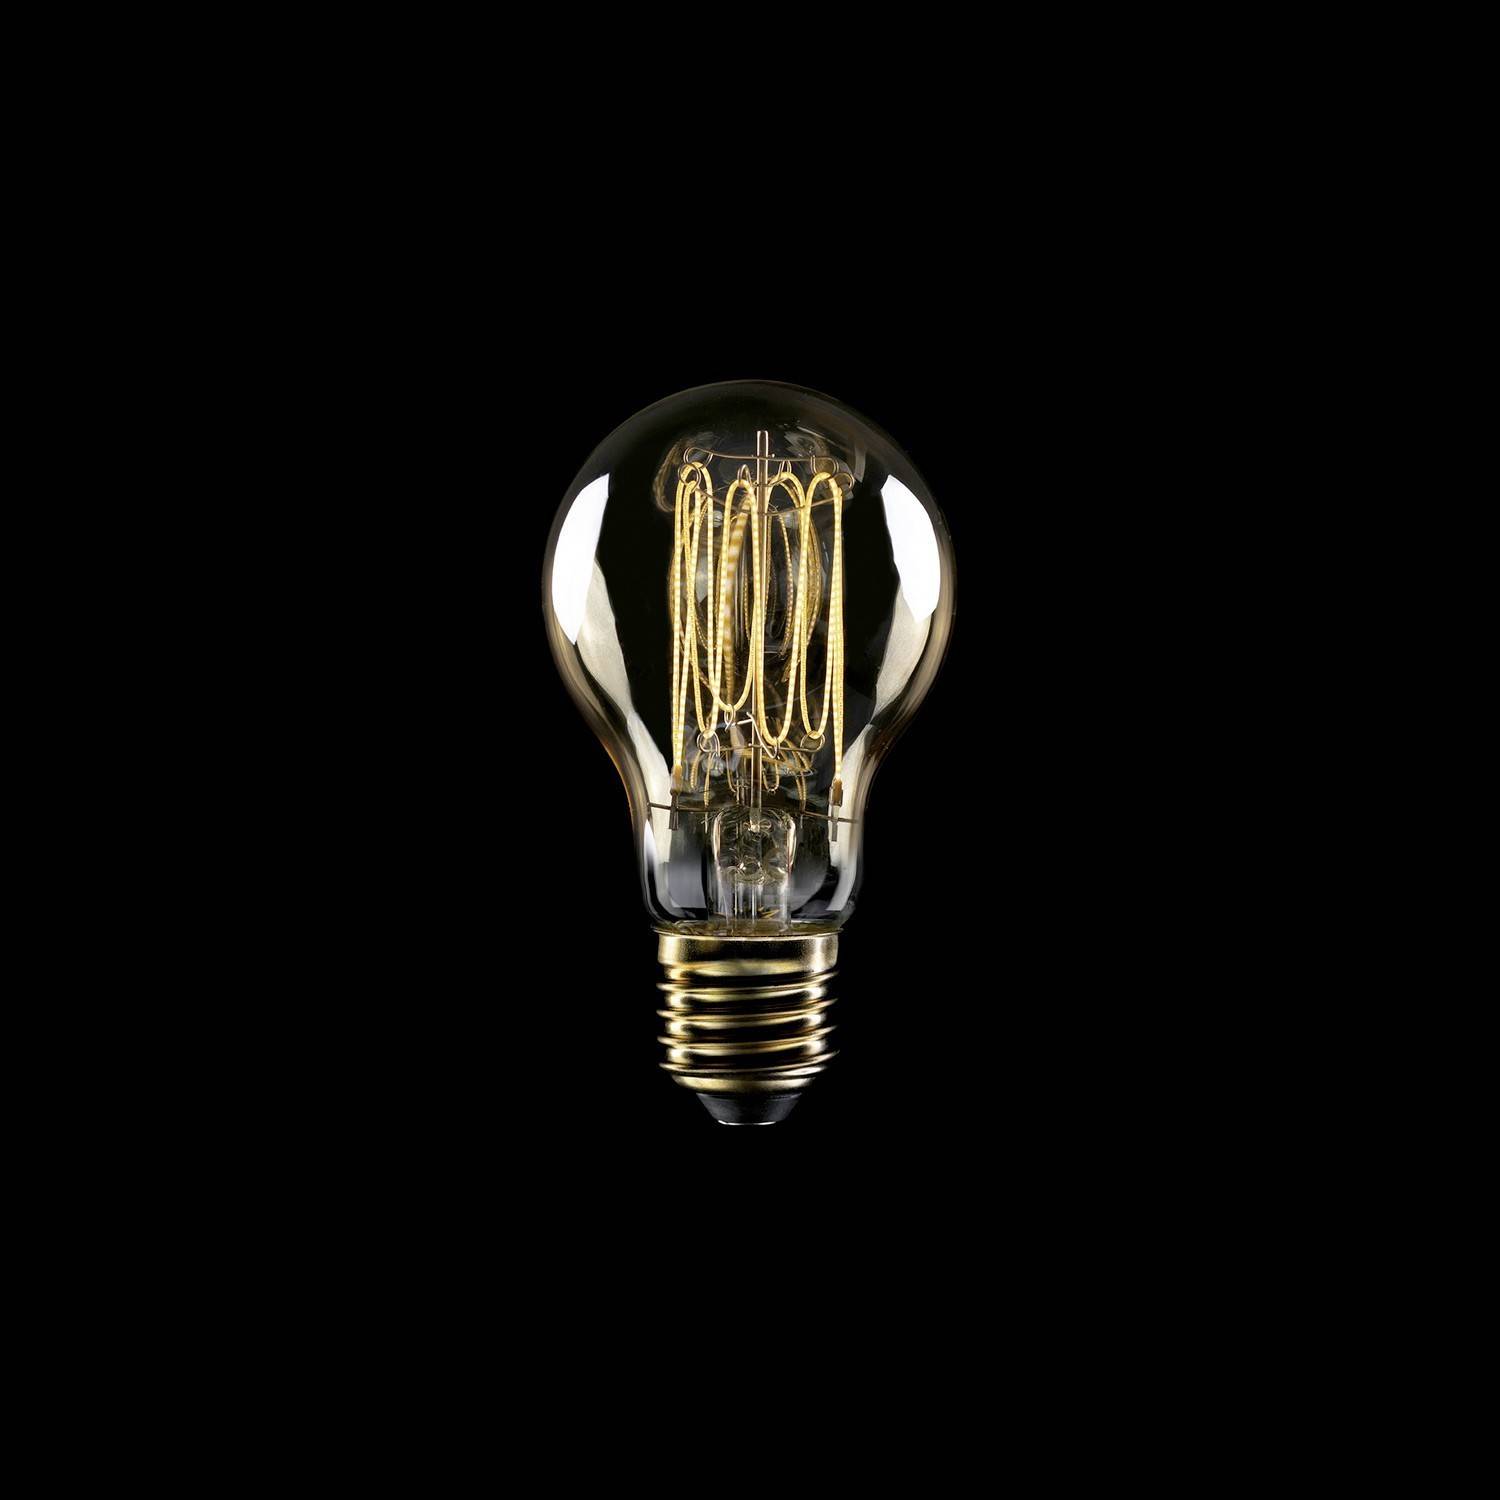 Bec cu LED cu filament de carbon în formă de linie, cu design de cușcă, model A60, 7W, 640Lm, E27, 2700K, cu posibilitate de reg